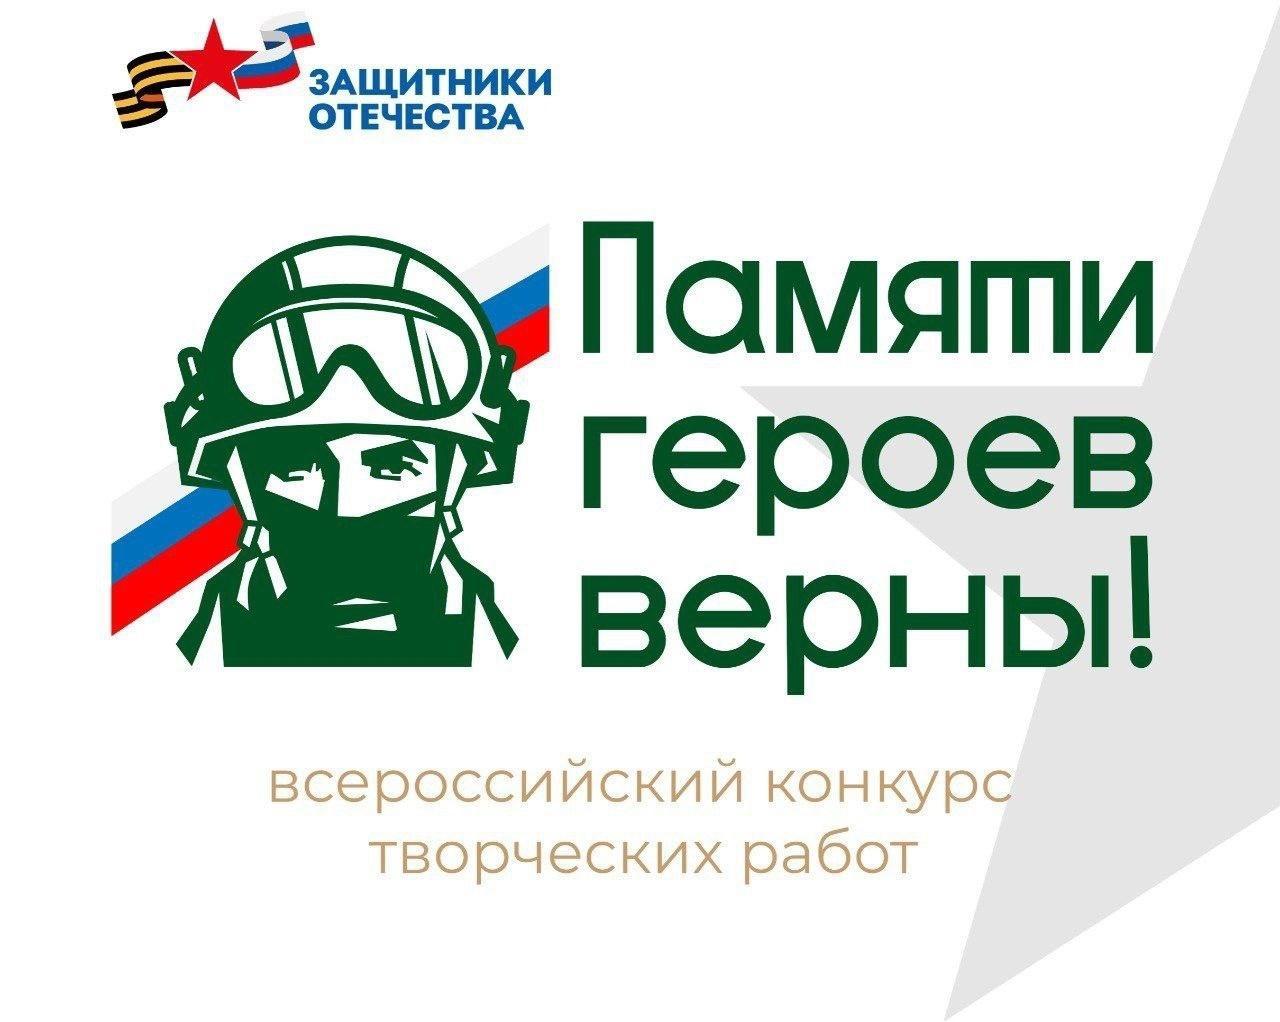 Фонд «Защитники Отечества» проводит первый Всероссийский конкурс творческих работ "Памяти героев верны!"